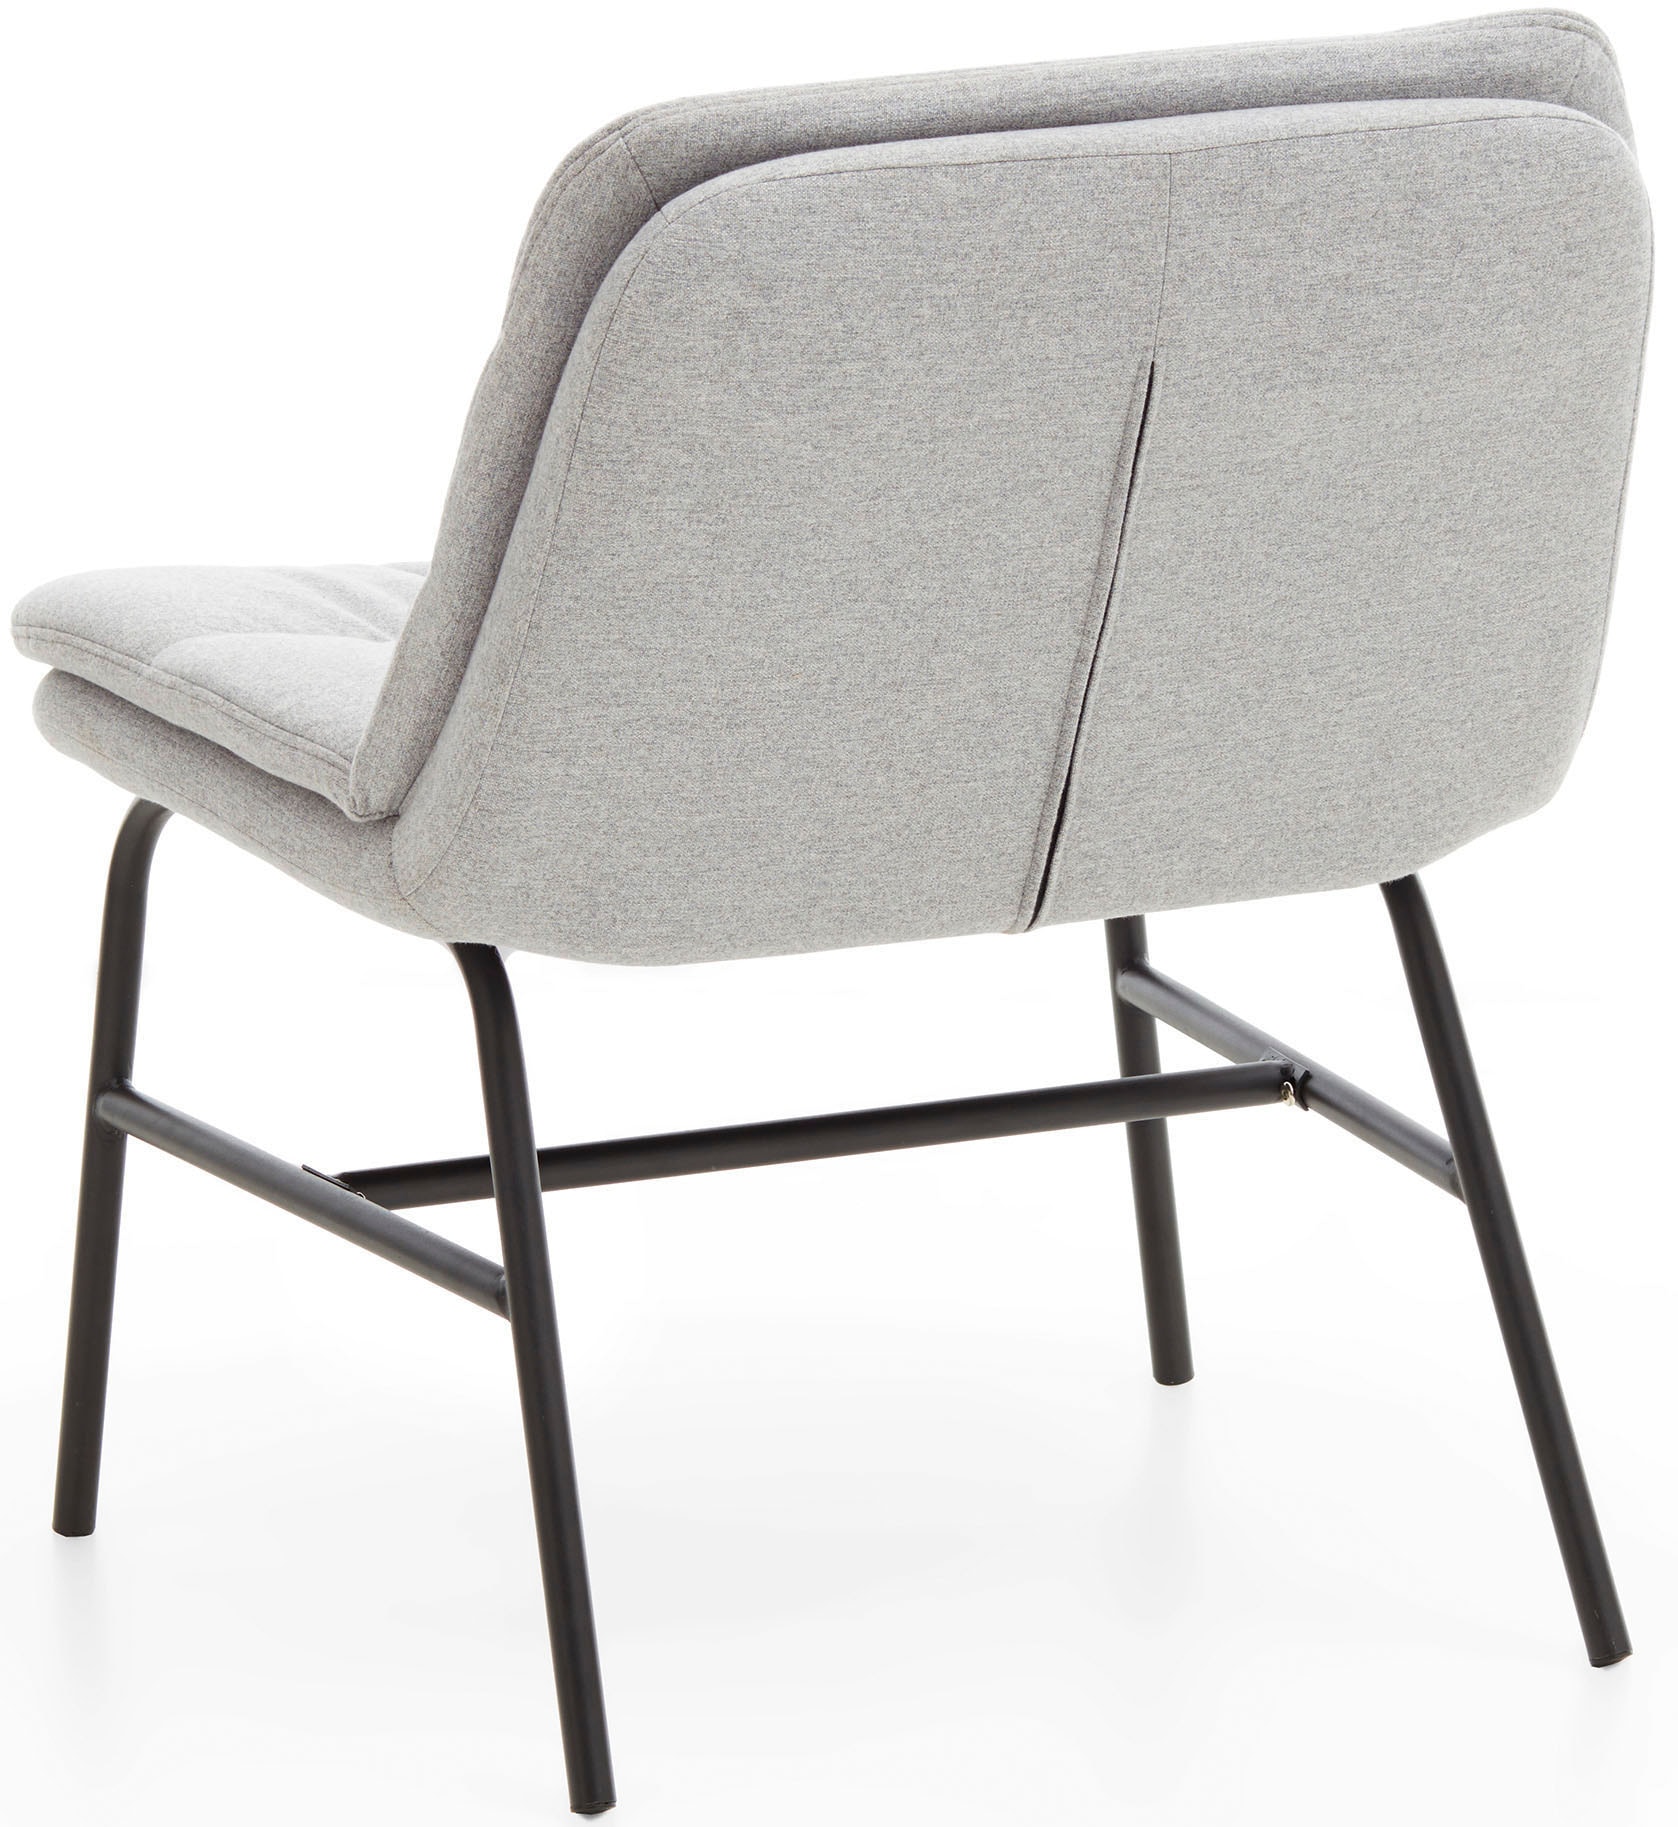 Home affaire Polsterstuhl »Peter«, (Set), 2 St., Feinstruktur, moderner  Stuhl mit breiter und tiefer Sitzfläche günstig kaufen